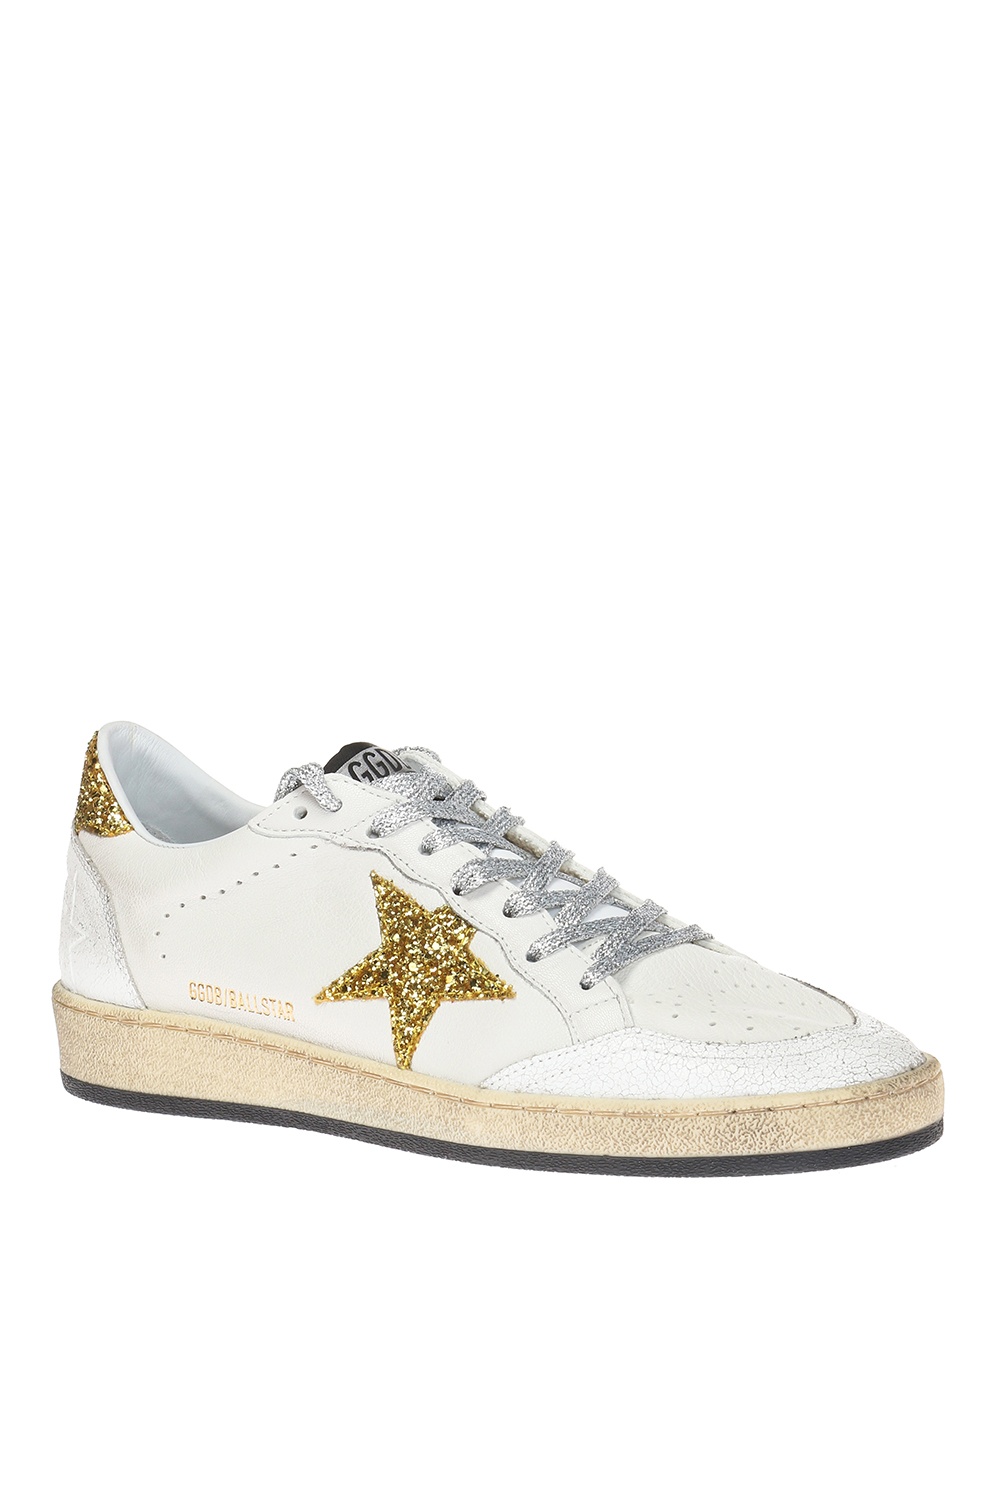 golden goose sneakers gold glitter star